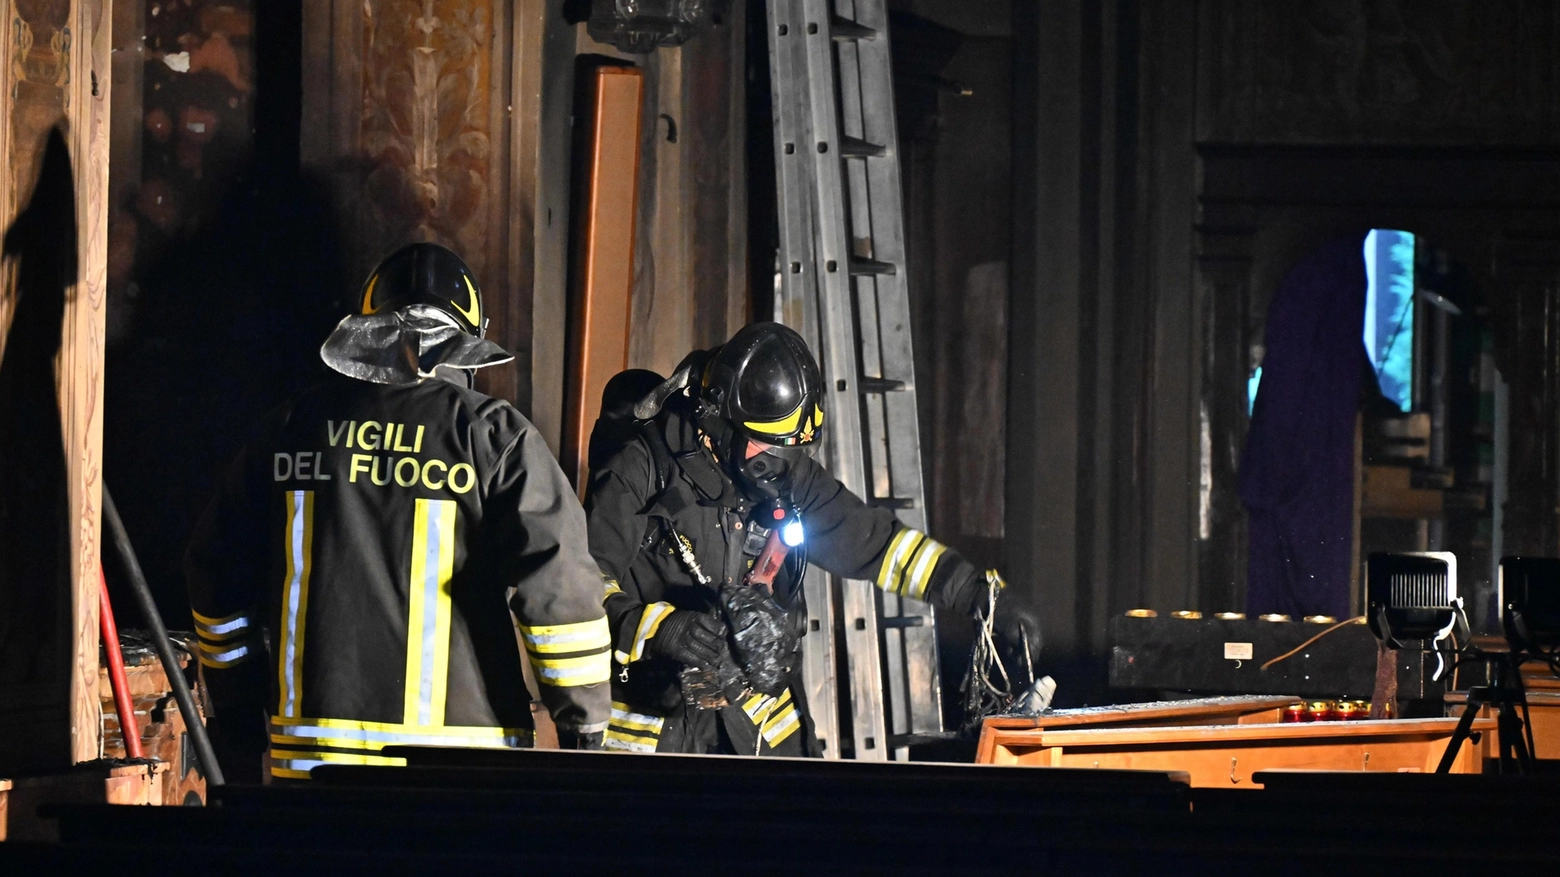 Chiusa la chiesa bruciata: "È stato un atto vandalico"